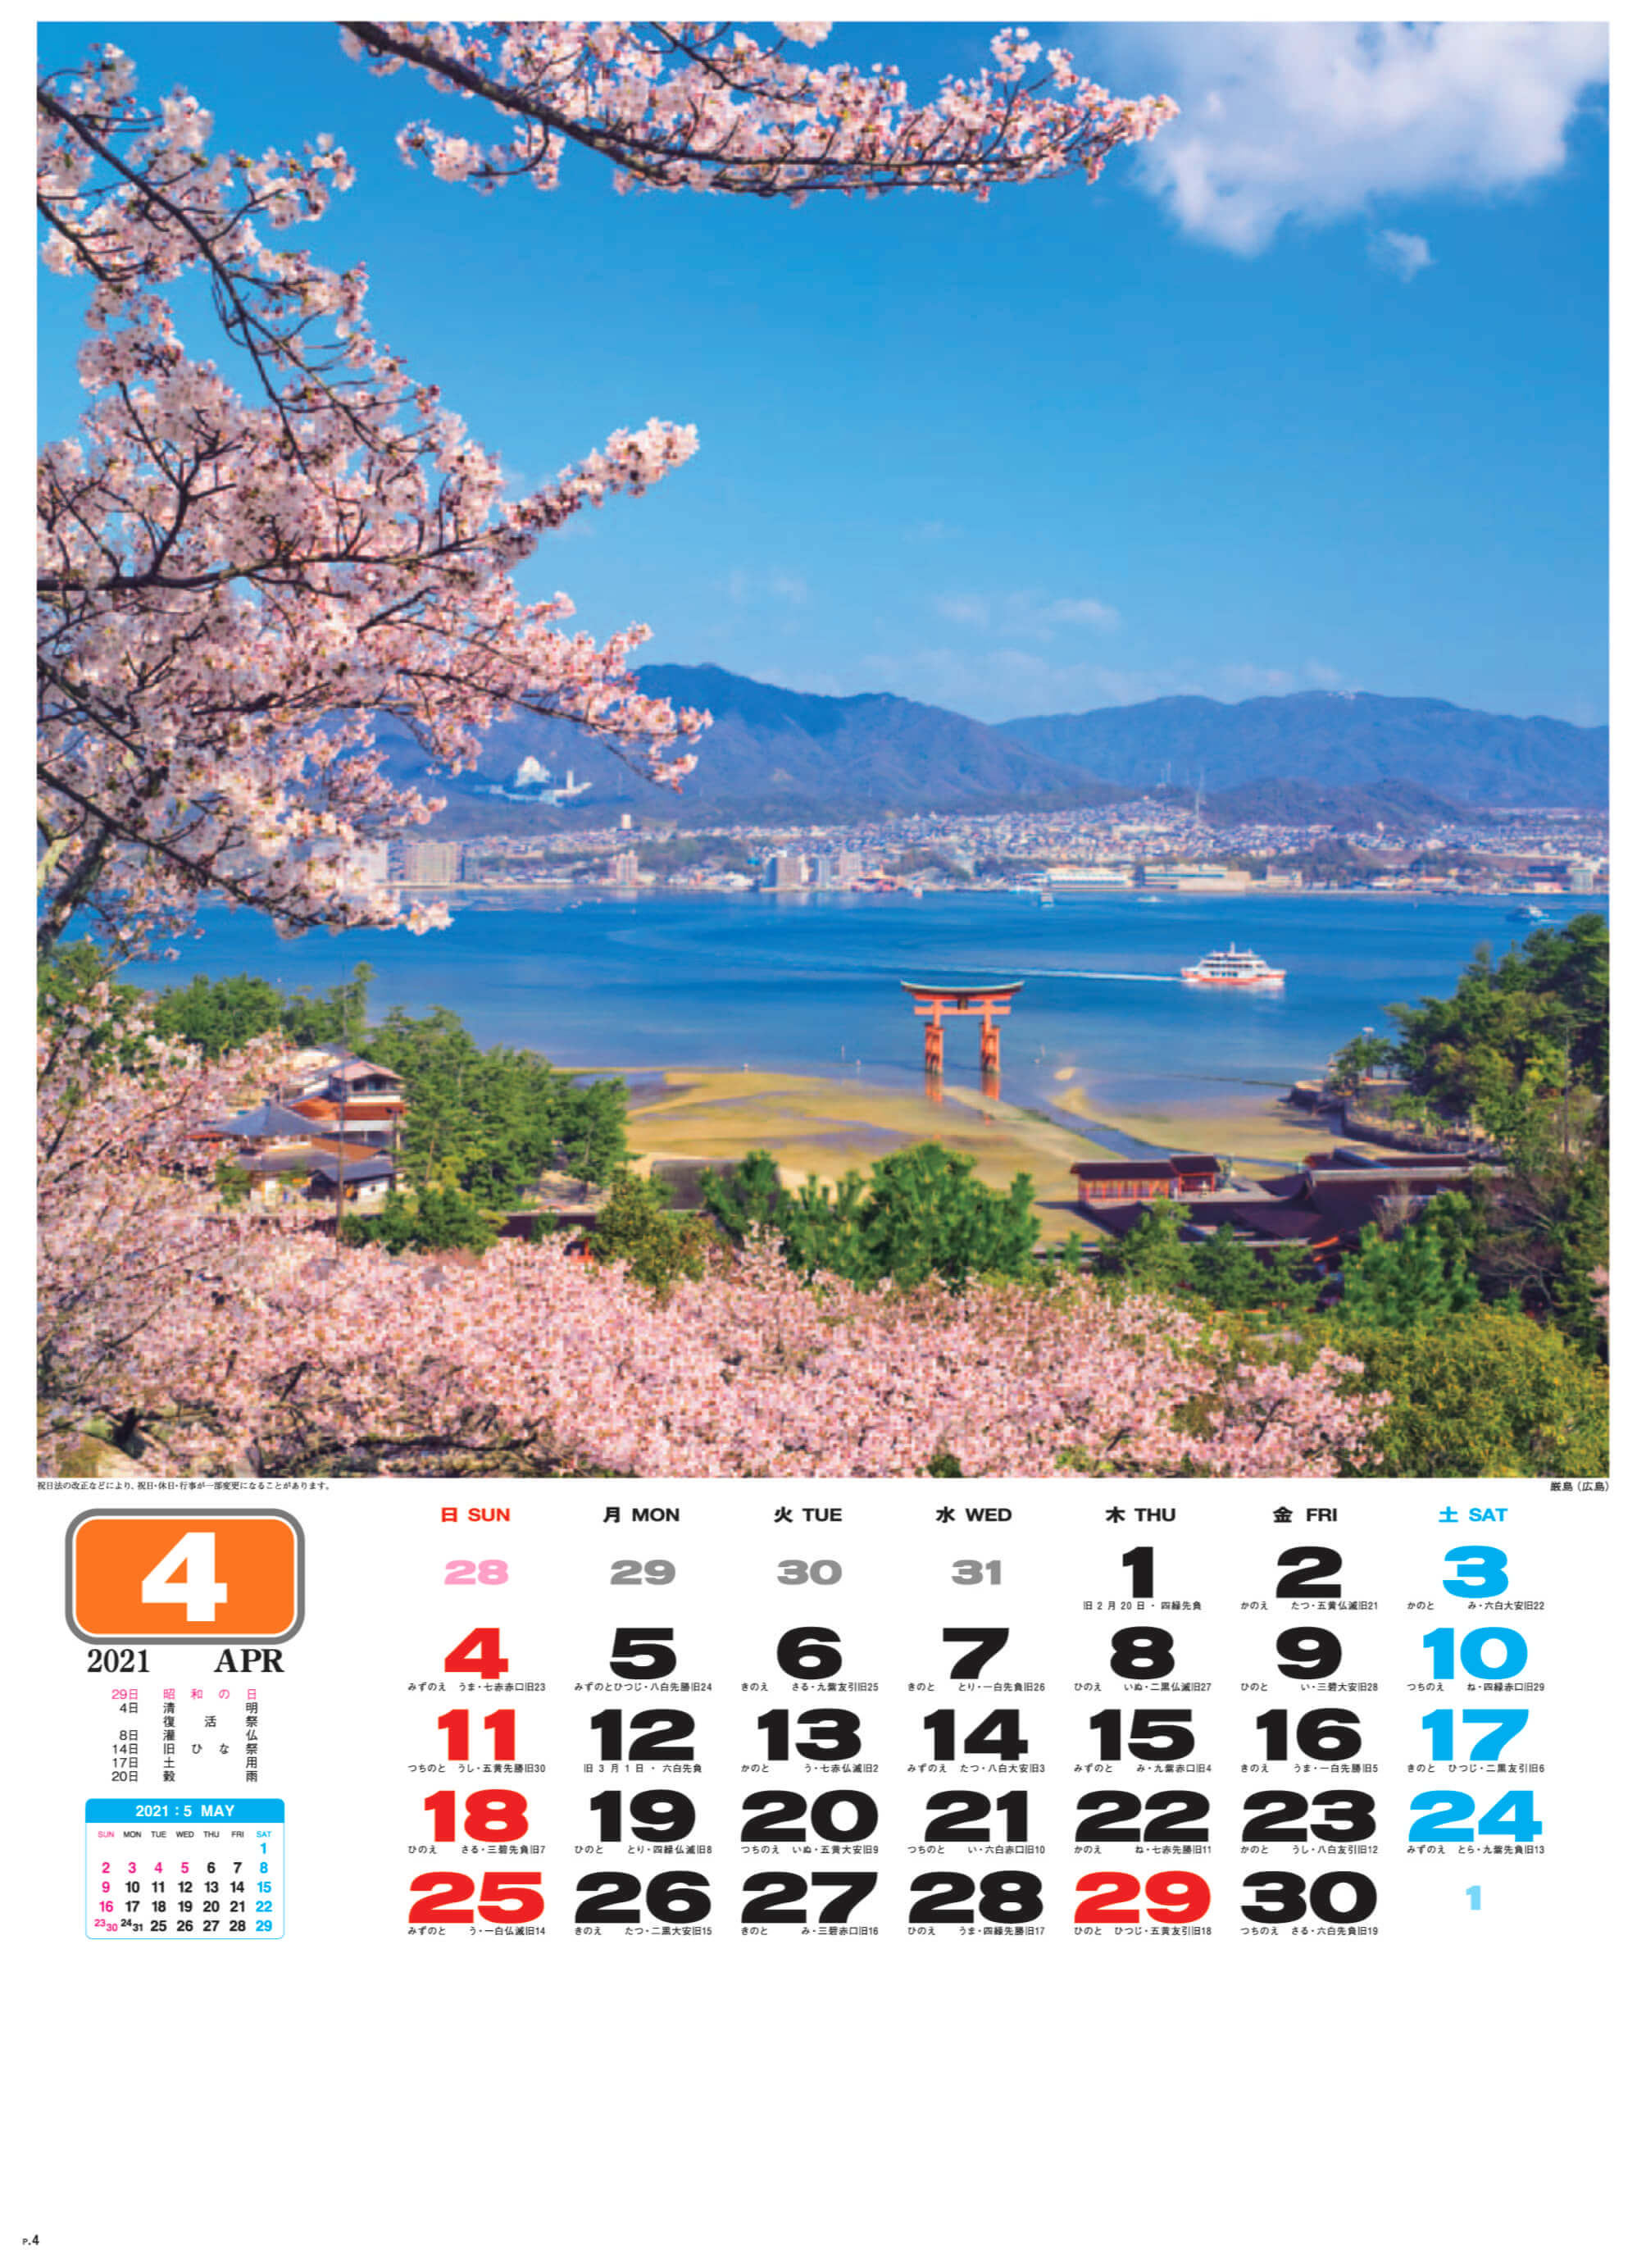 厳島(広島) 美しき日本 2021年カレンダーの画像